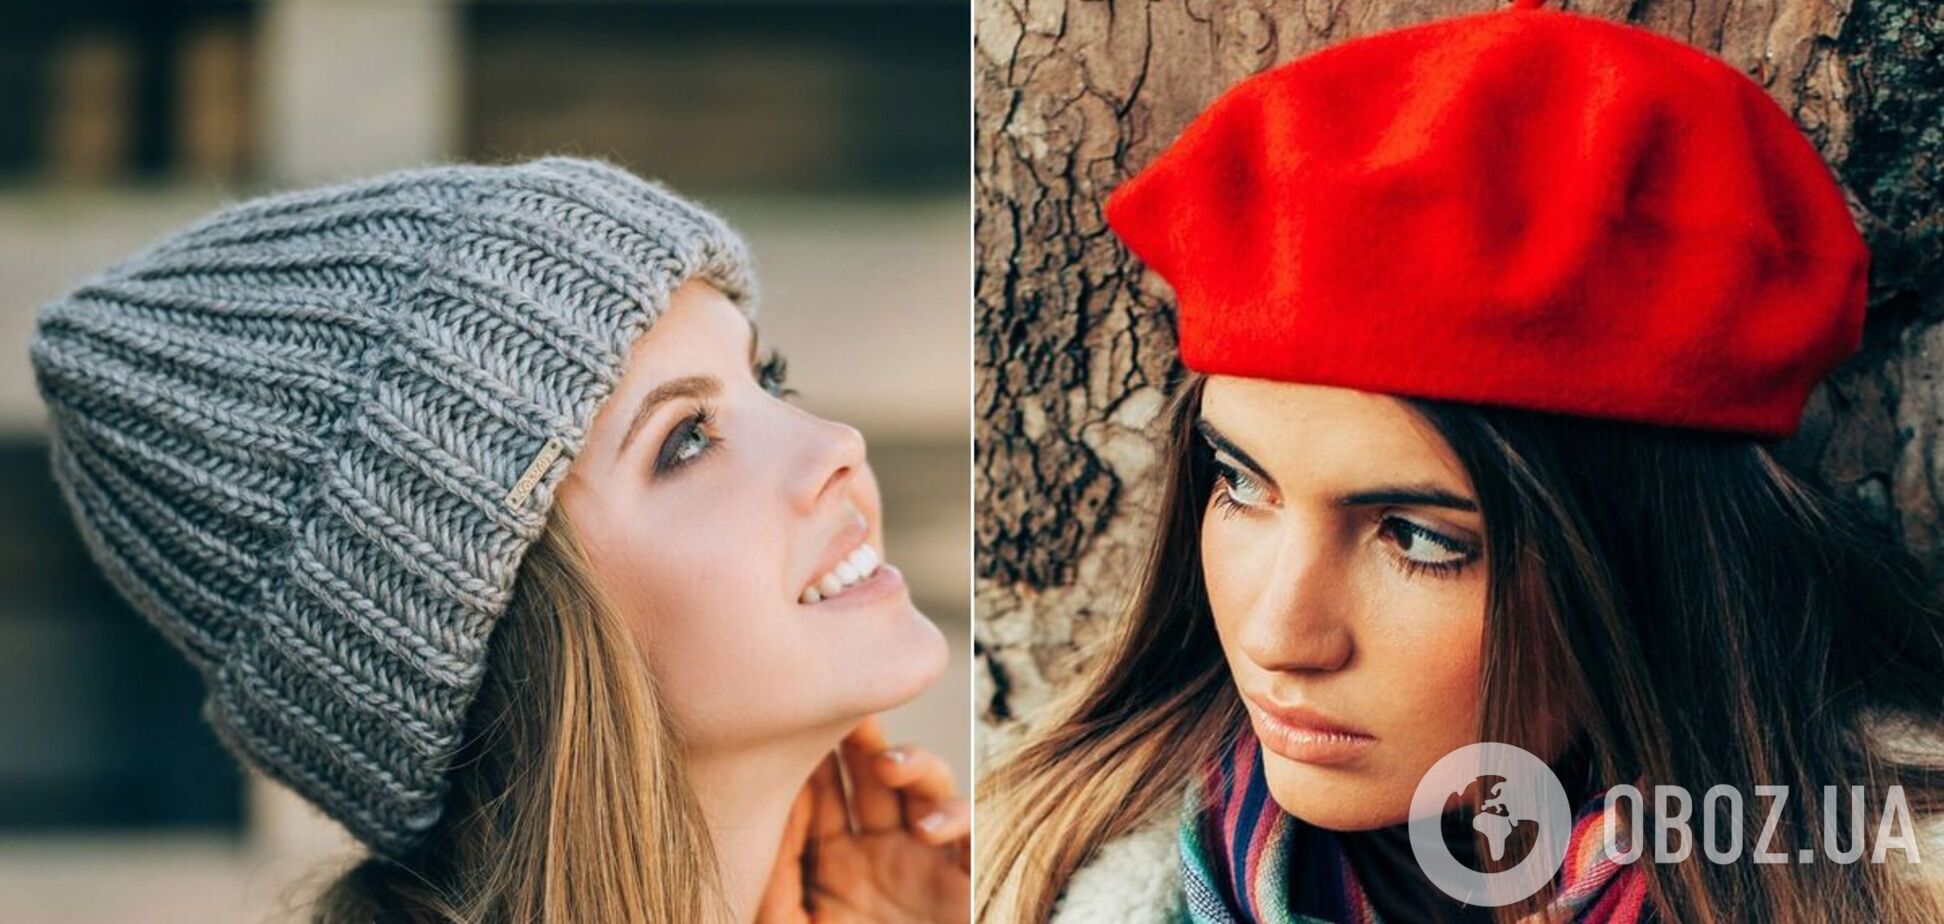 Самые популярные головные уборы зимы 2021: что выбрать, чтобы выглядеть стильно